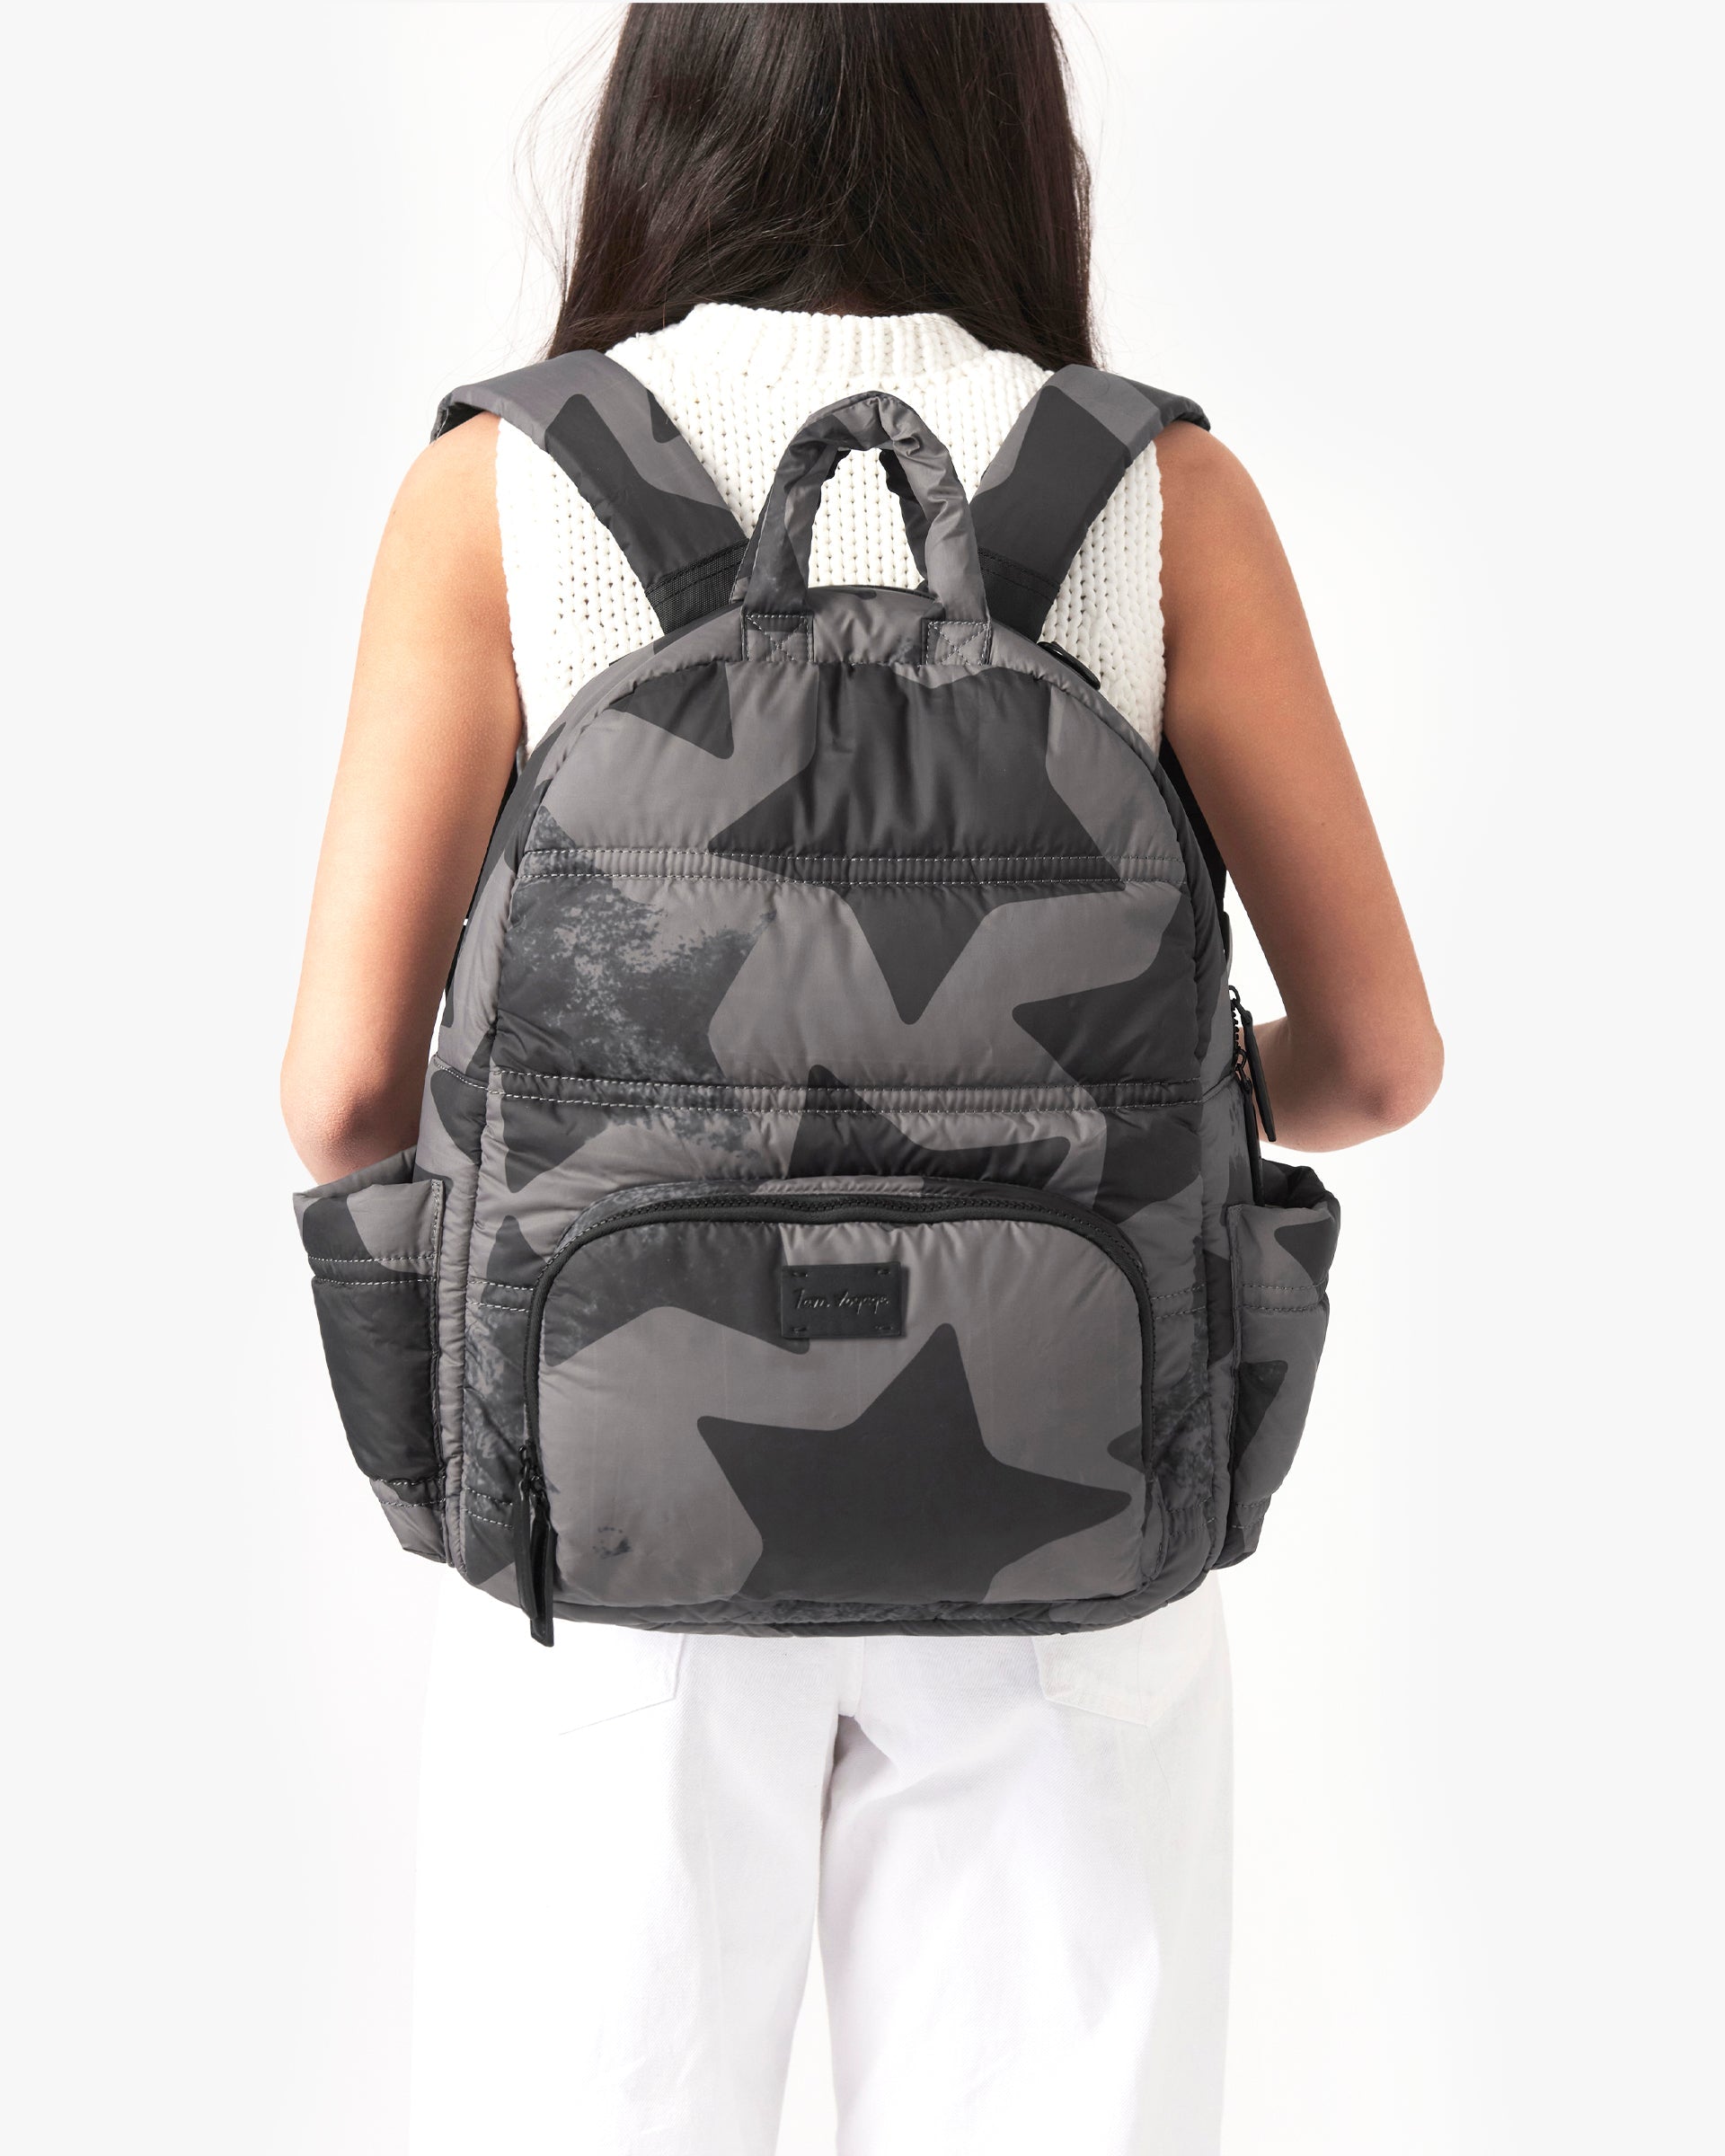 BK718 Backpack - Prints